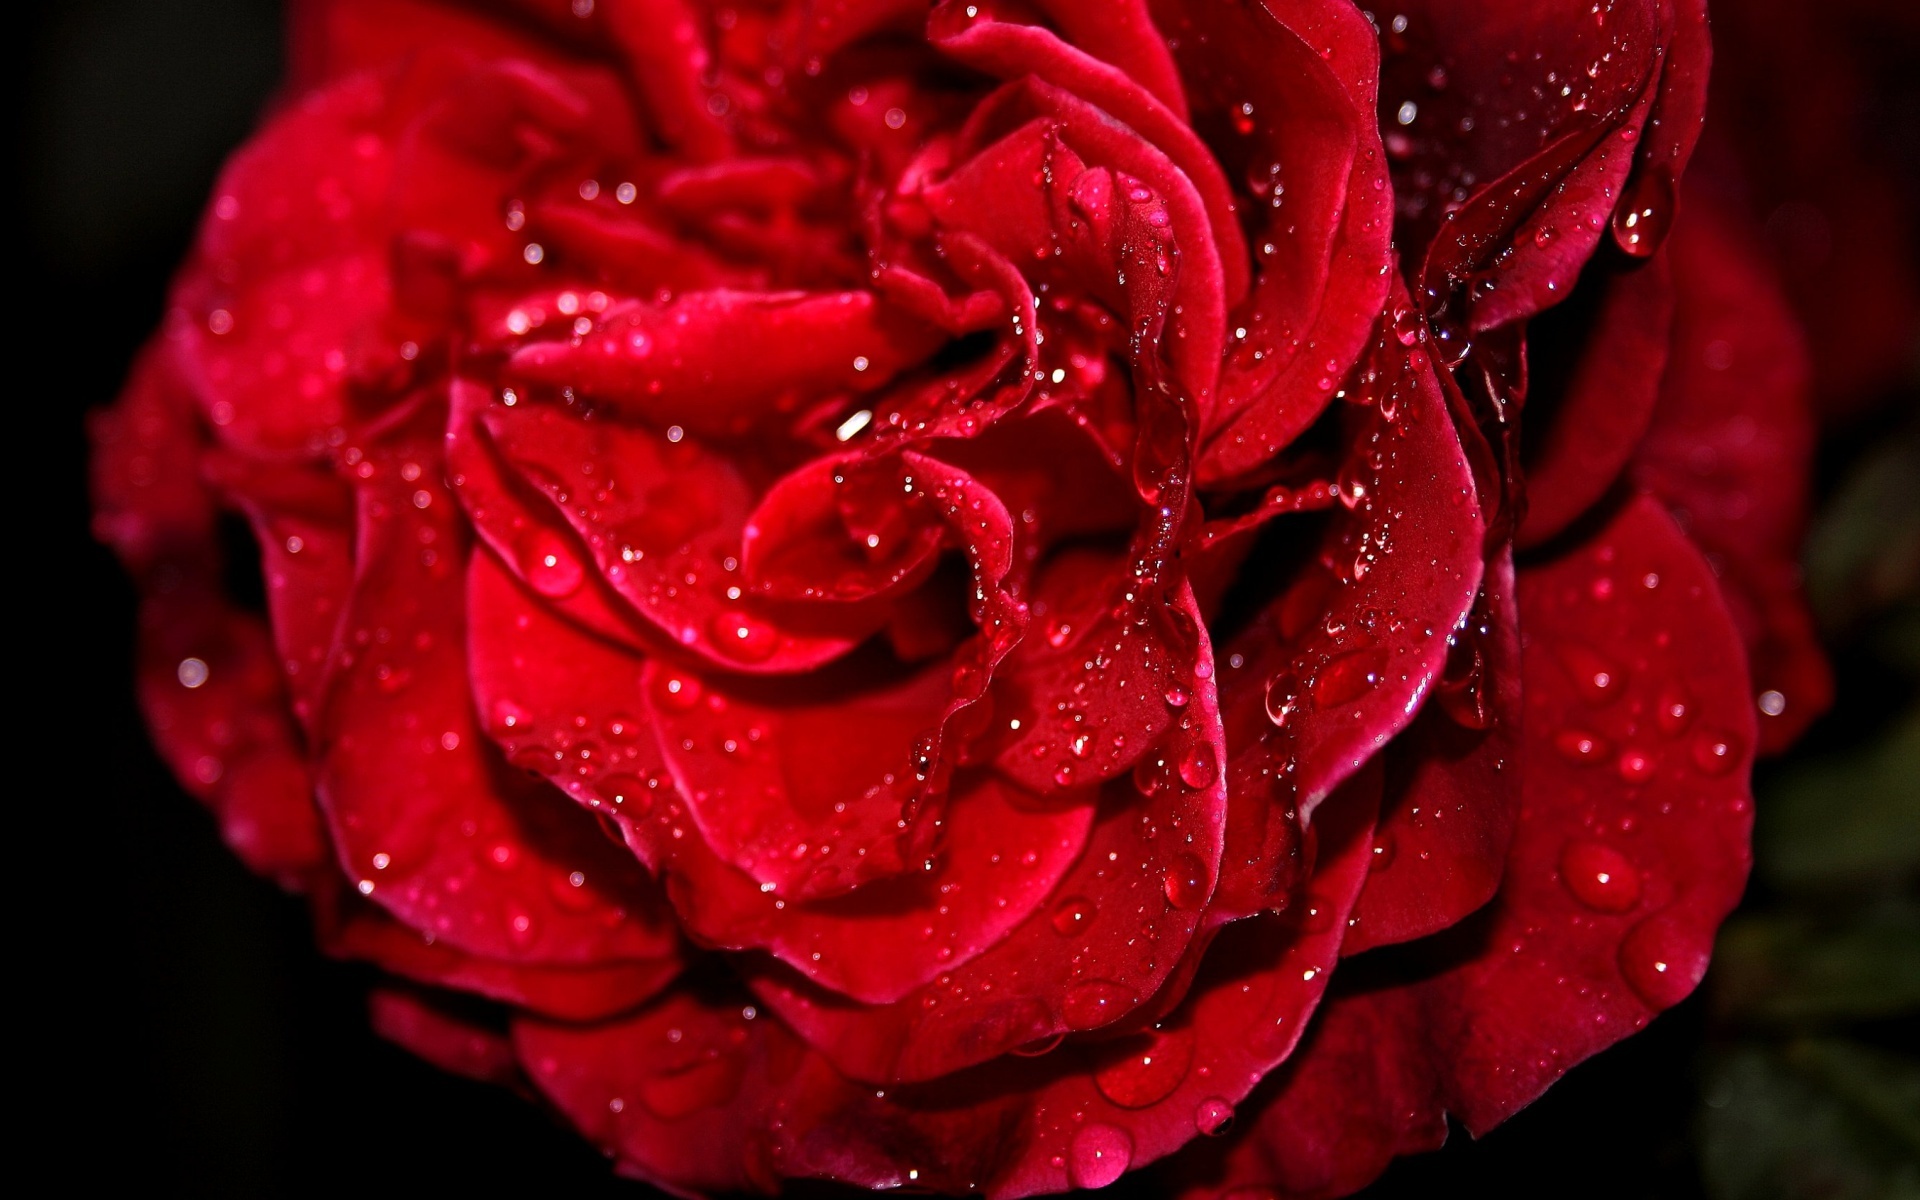 [45+] 3D Red Roses Wallpaper | WallpaperSafari.com